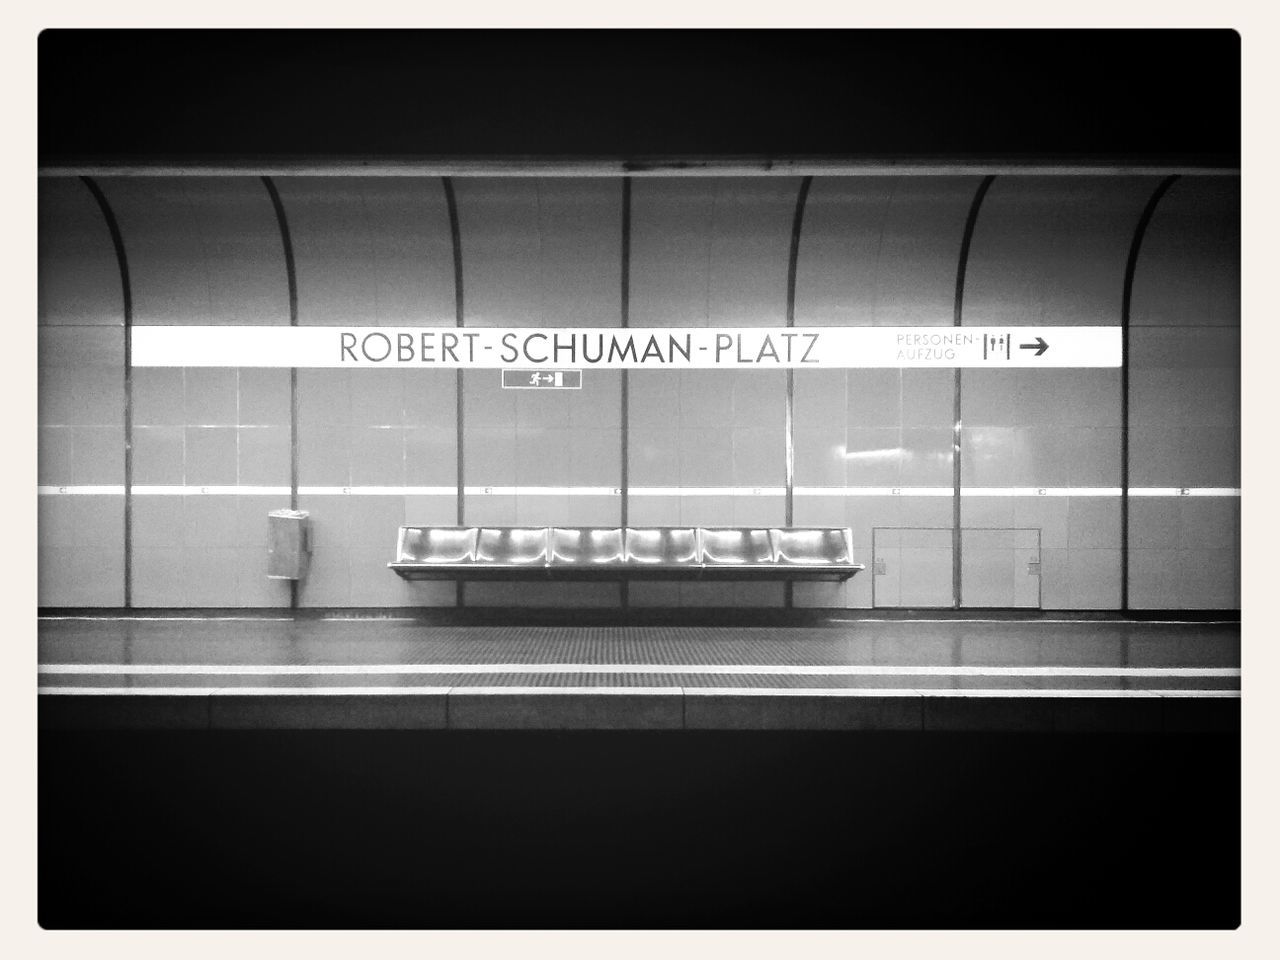 Robert-Schuman-Platz